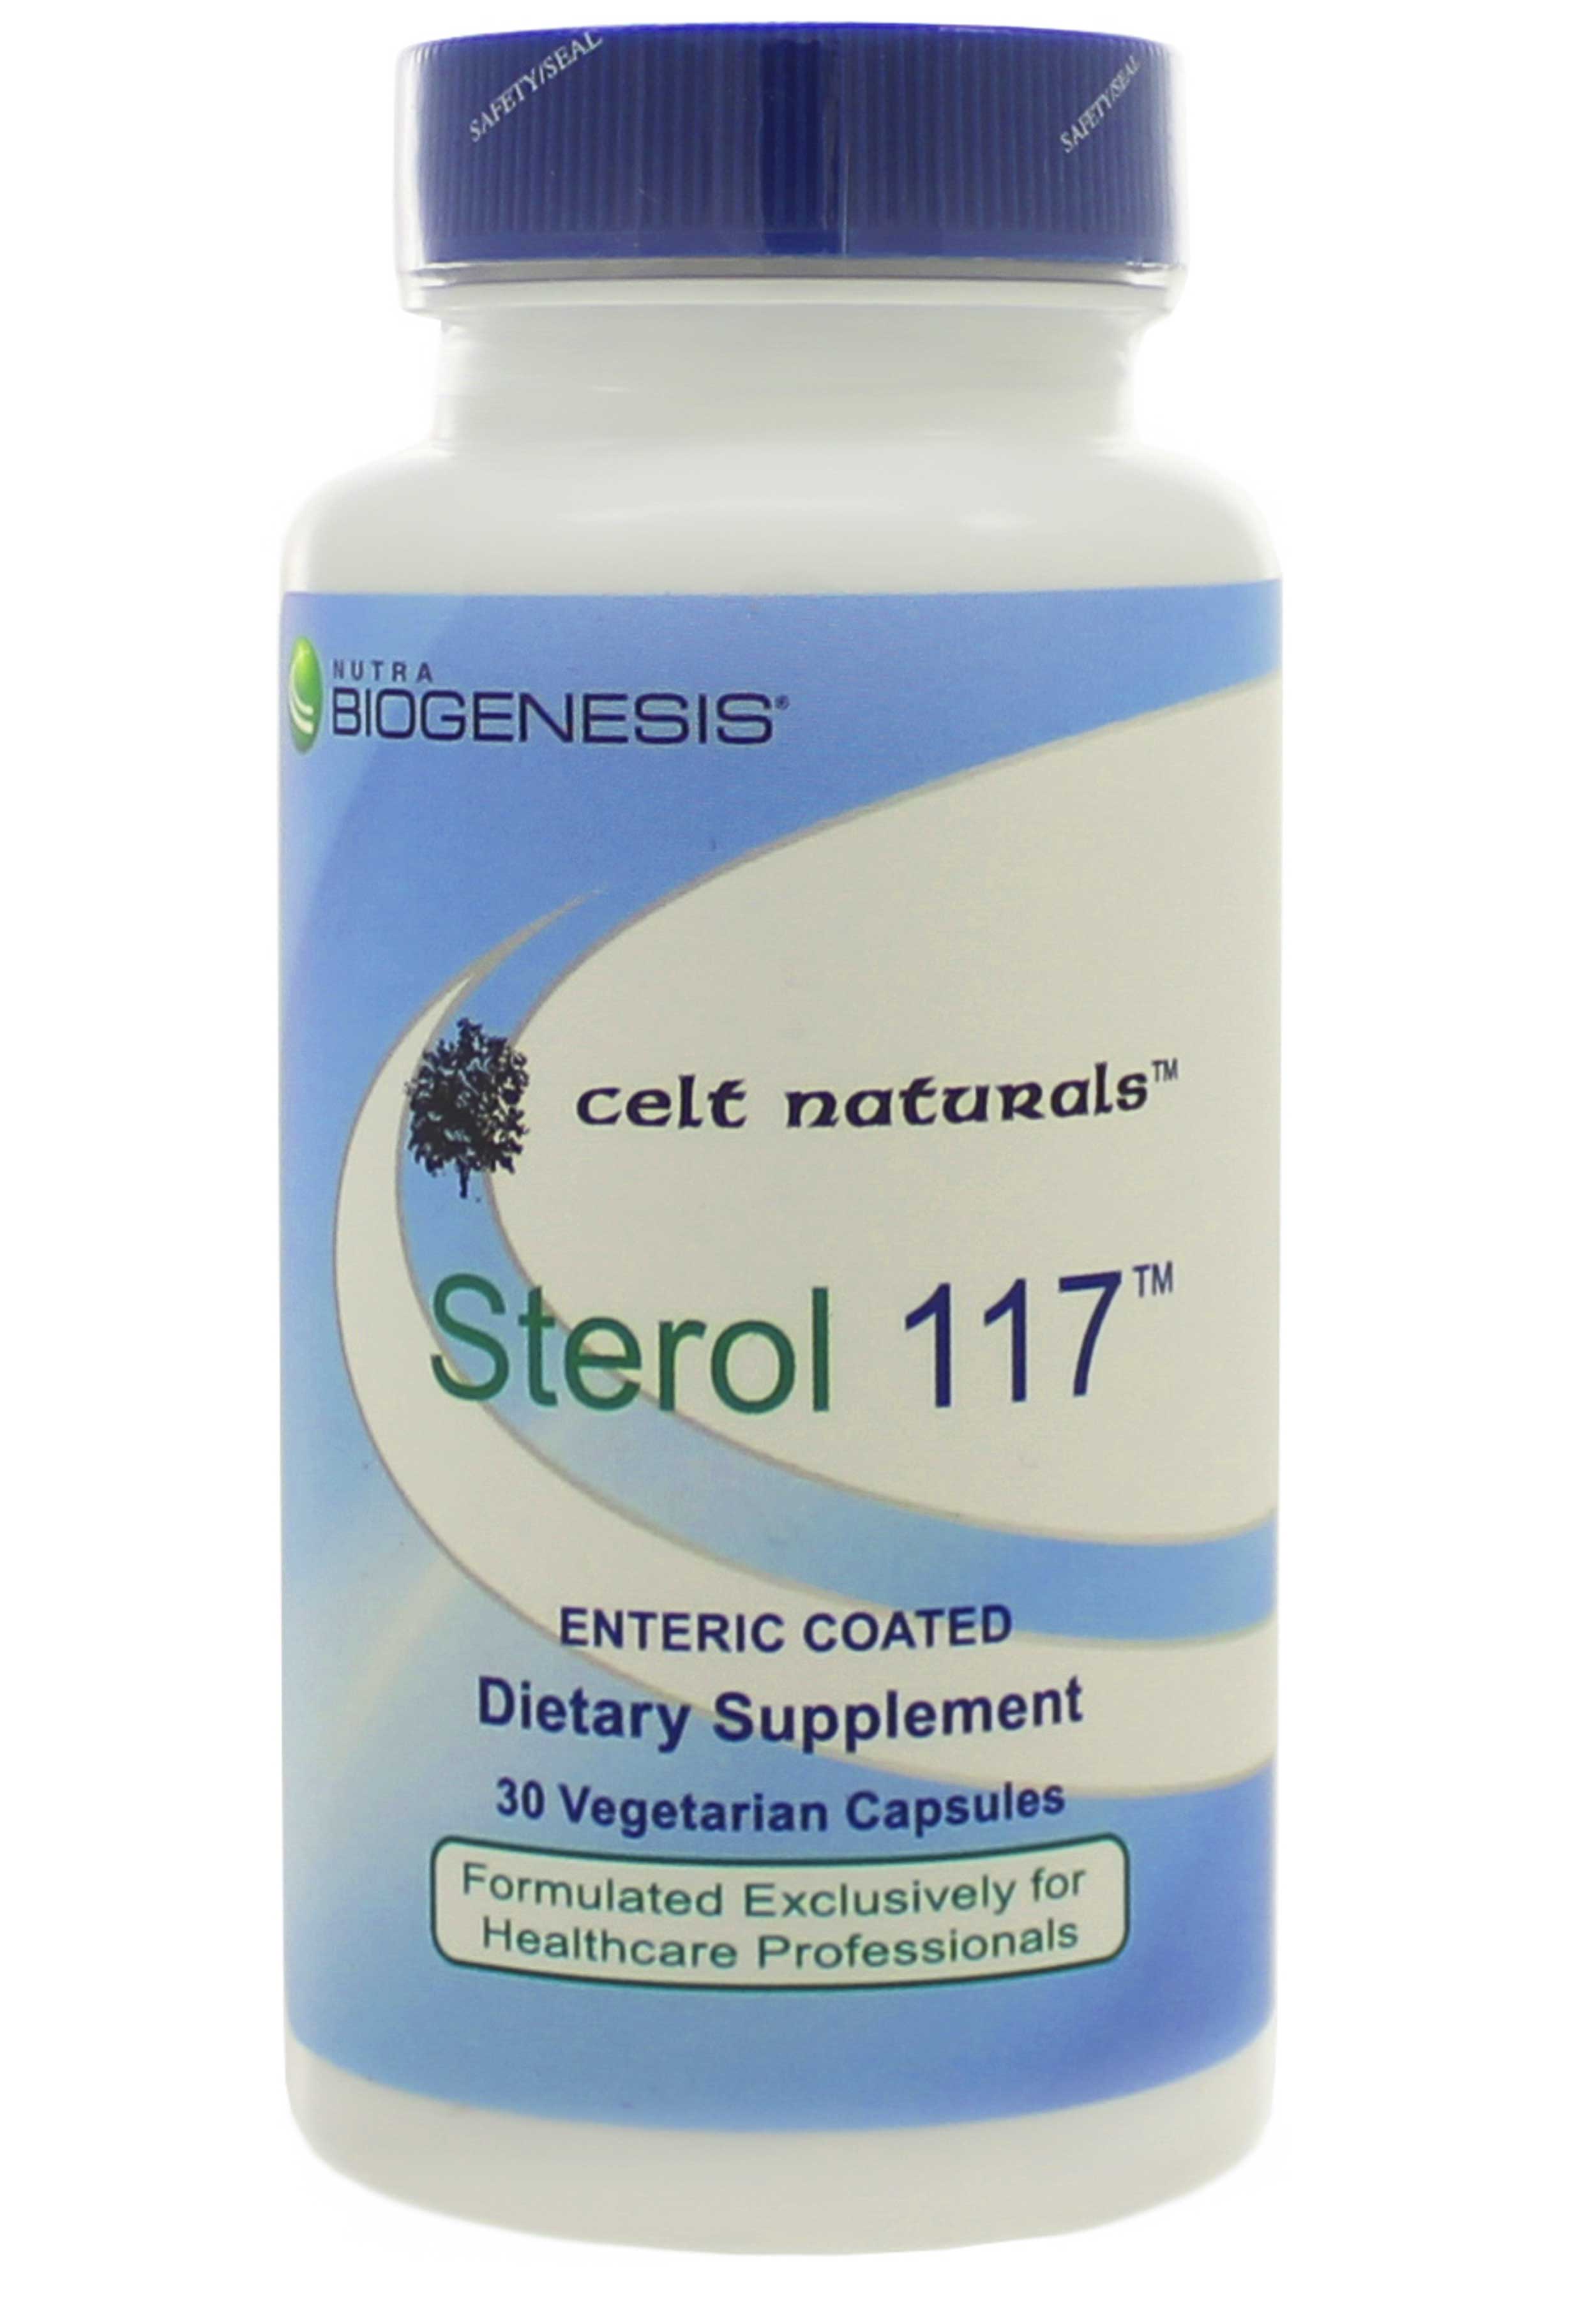 BioGenesis Sterol 117